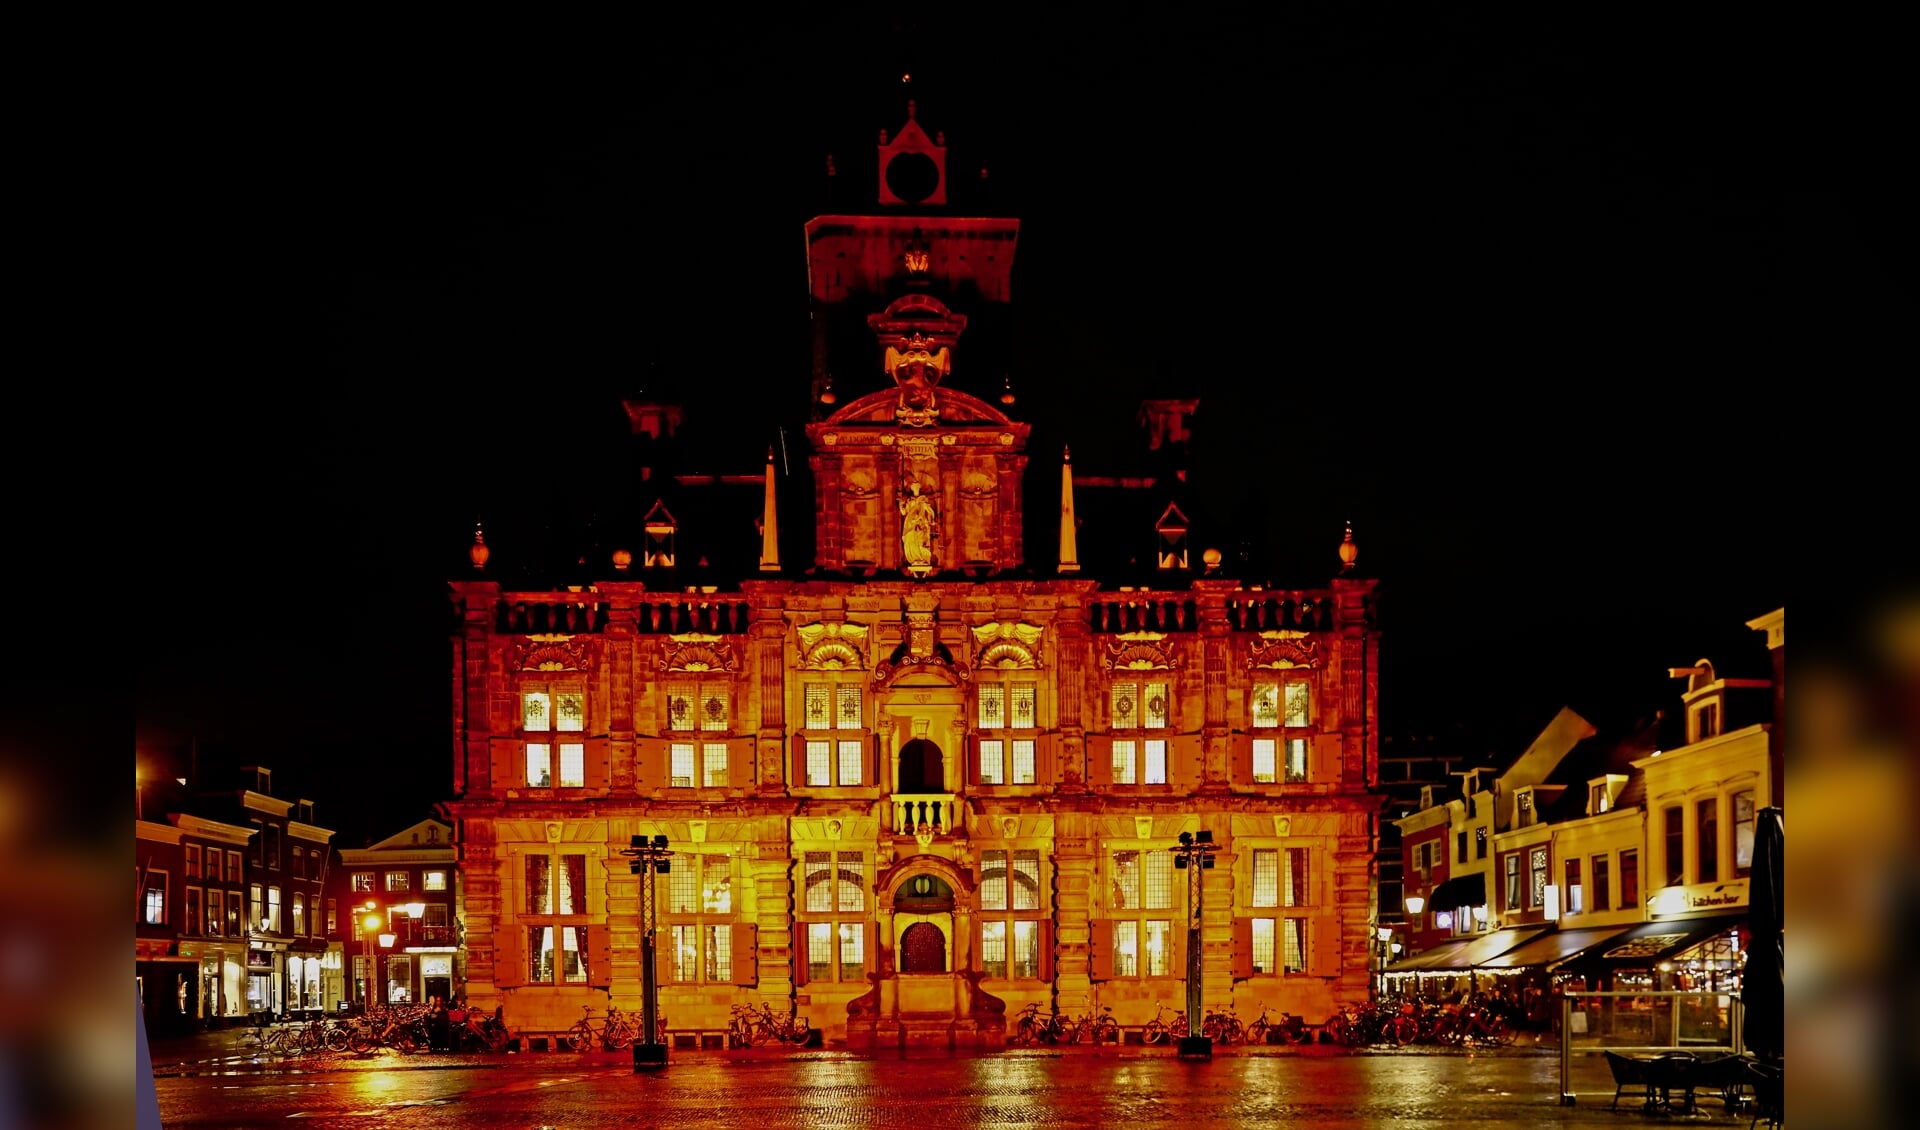 Het stadhuis van Delft, opvallend oranje verlicht voor een goed doel (Foto: Koos Bommelé)